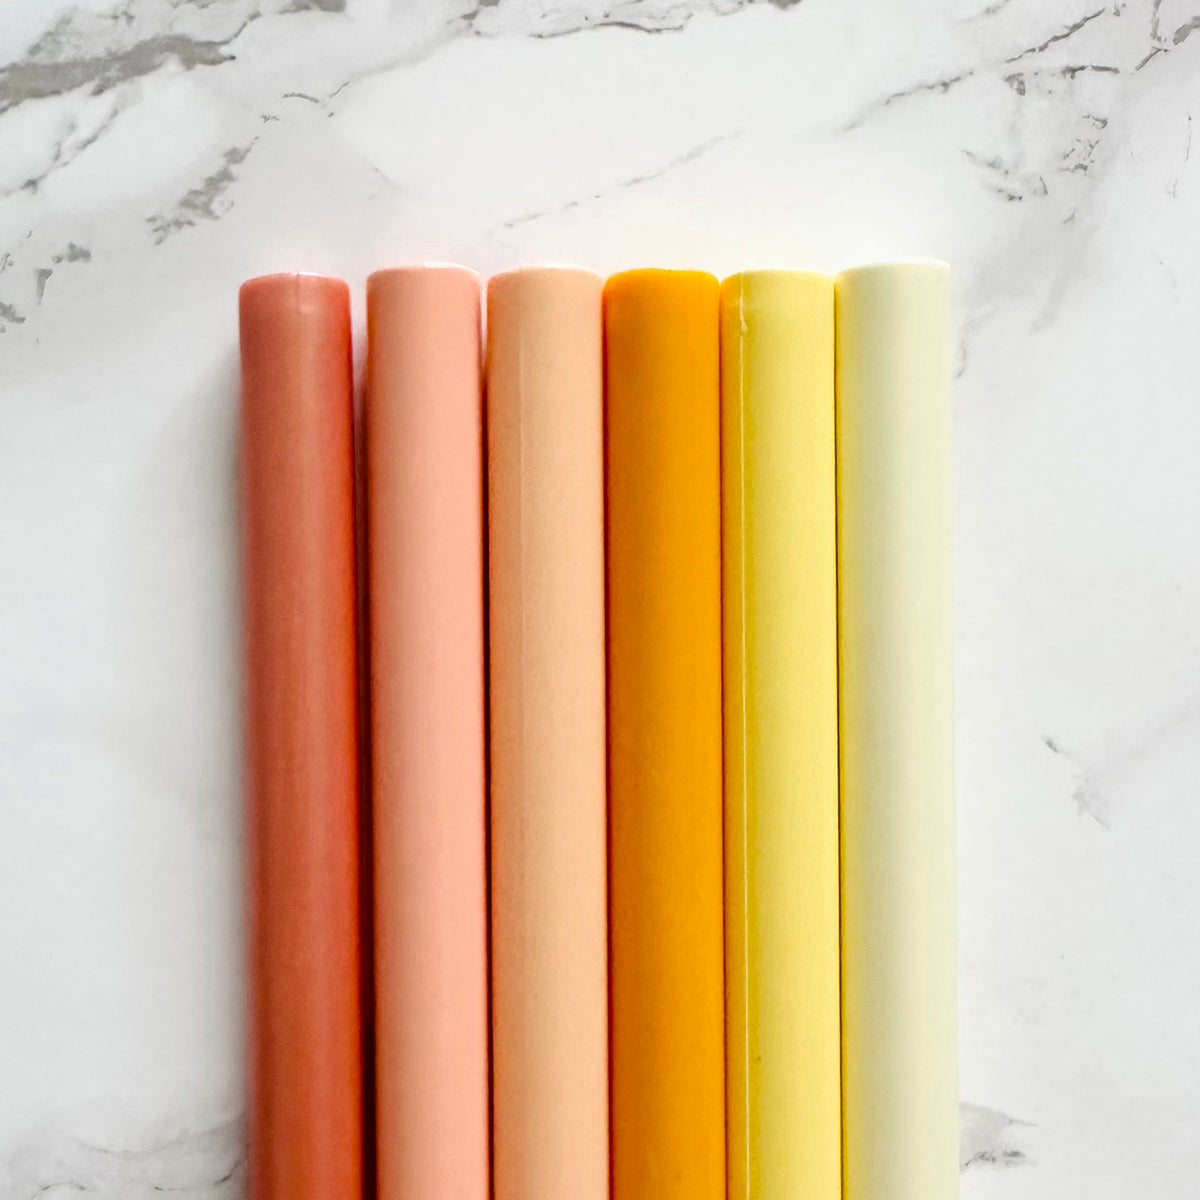 Orange & Yellow Bundle Sealing Wax Sticks